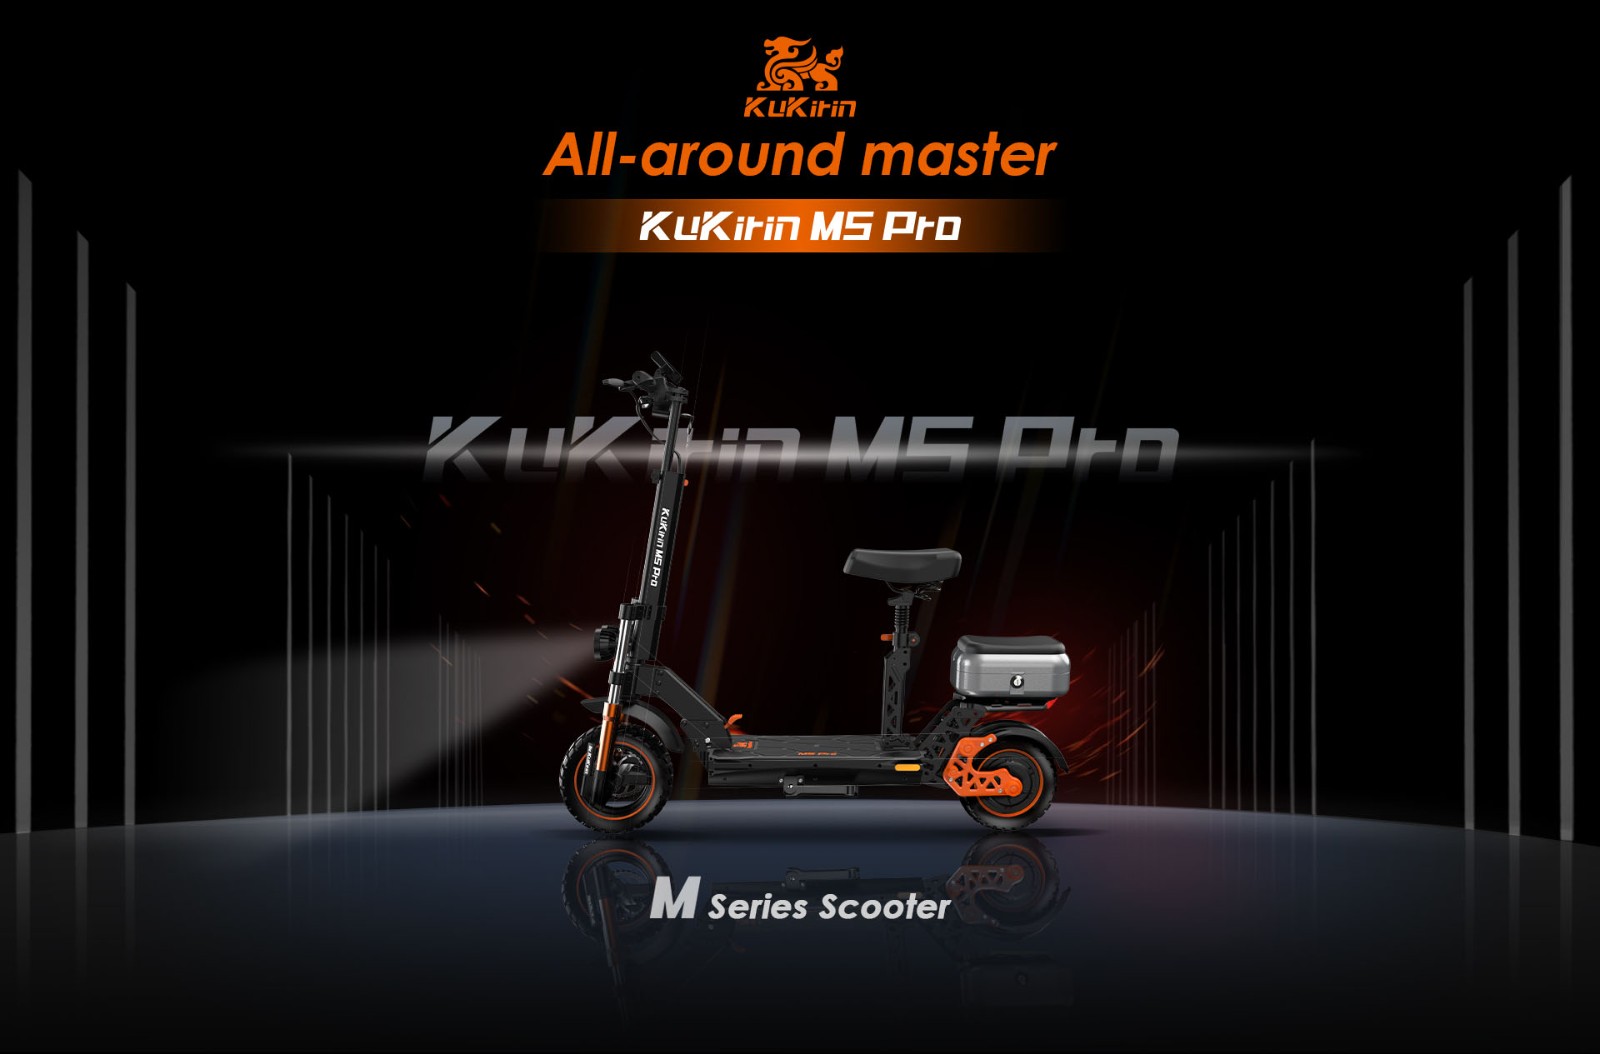 Elektrická kolobežka KuKirin M5 Pro 1000W motor 52Km/h maximálna rýchlosť 48V 20Ah batéria s dojazdom 70 km, dvojkotúčové brzdy, 7 svetiel, viacero rýchlostných režimov 120KG maximálne zaťaženie s odnímateľným sedadlom